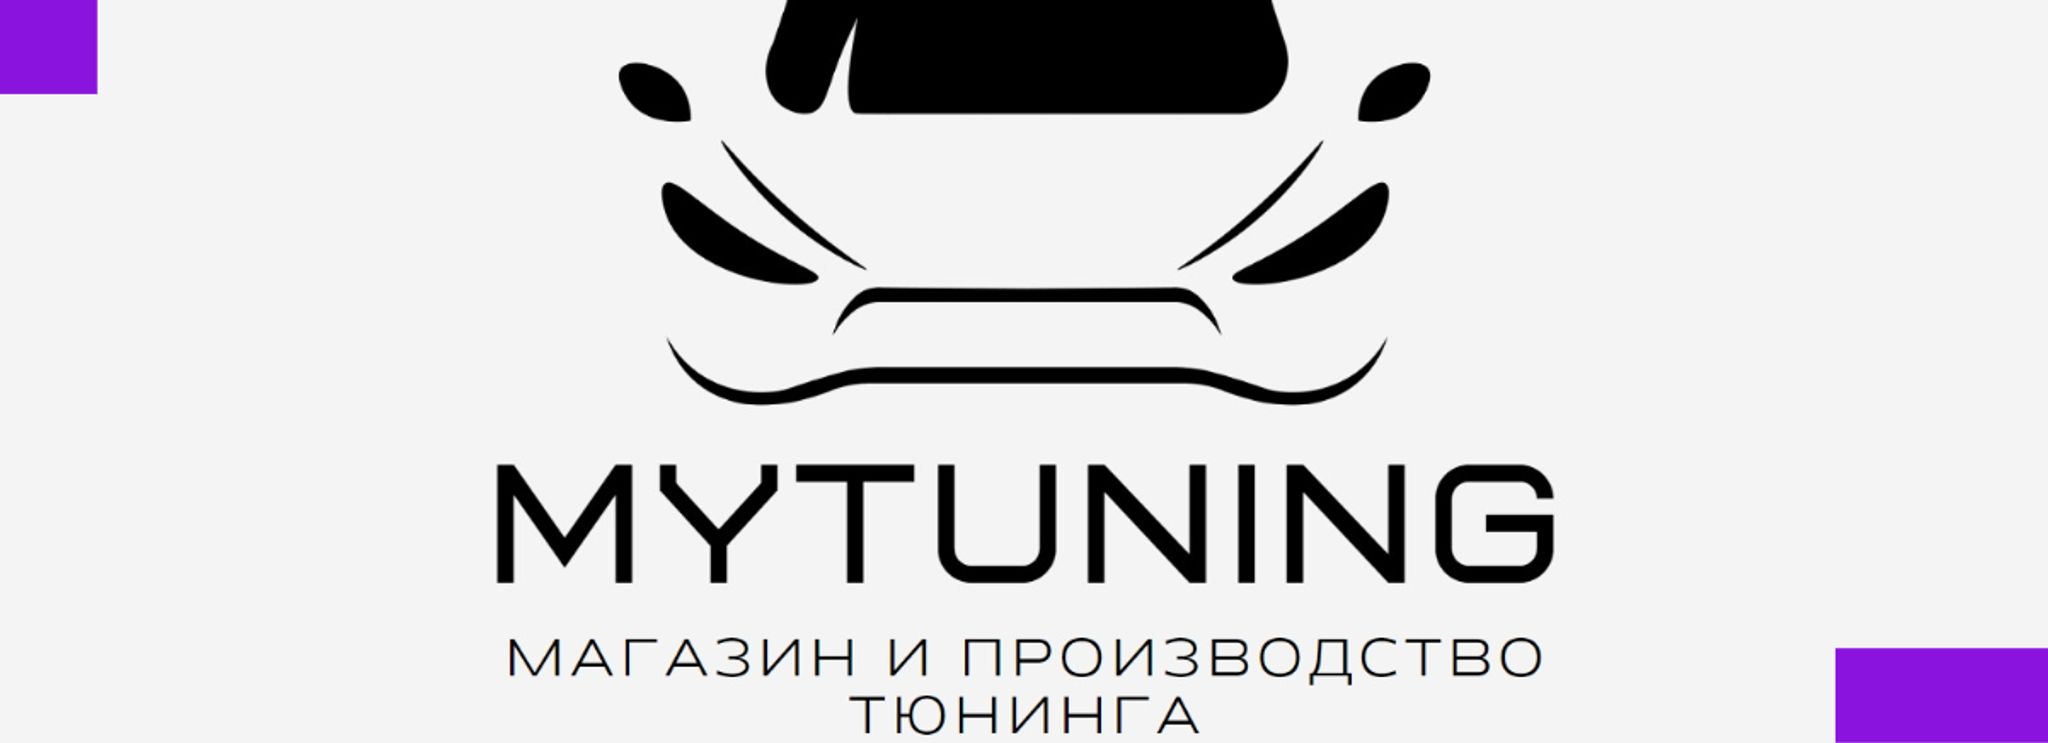 Преимущества приобретения обвеса для тюнинга внедорожников в магазине Tuning-Jeep.Ru очевидны: